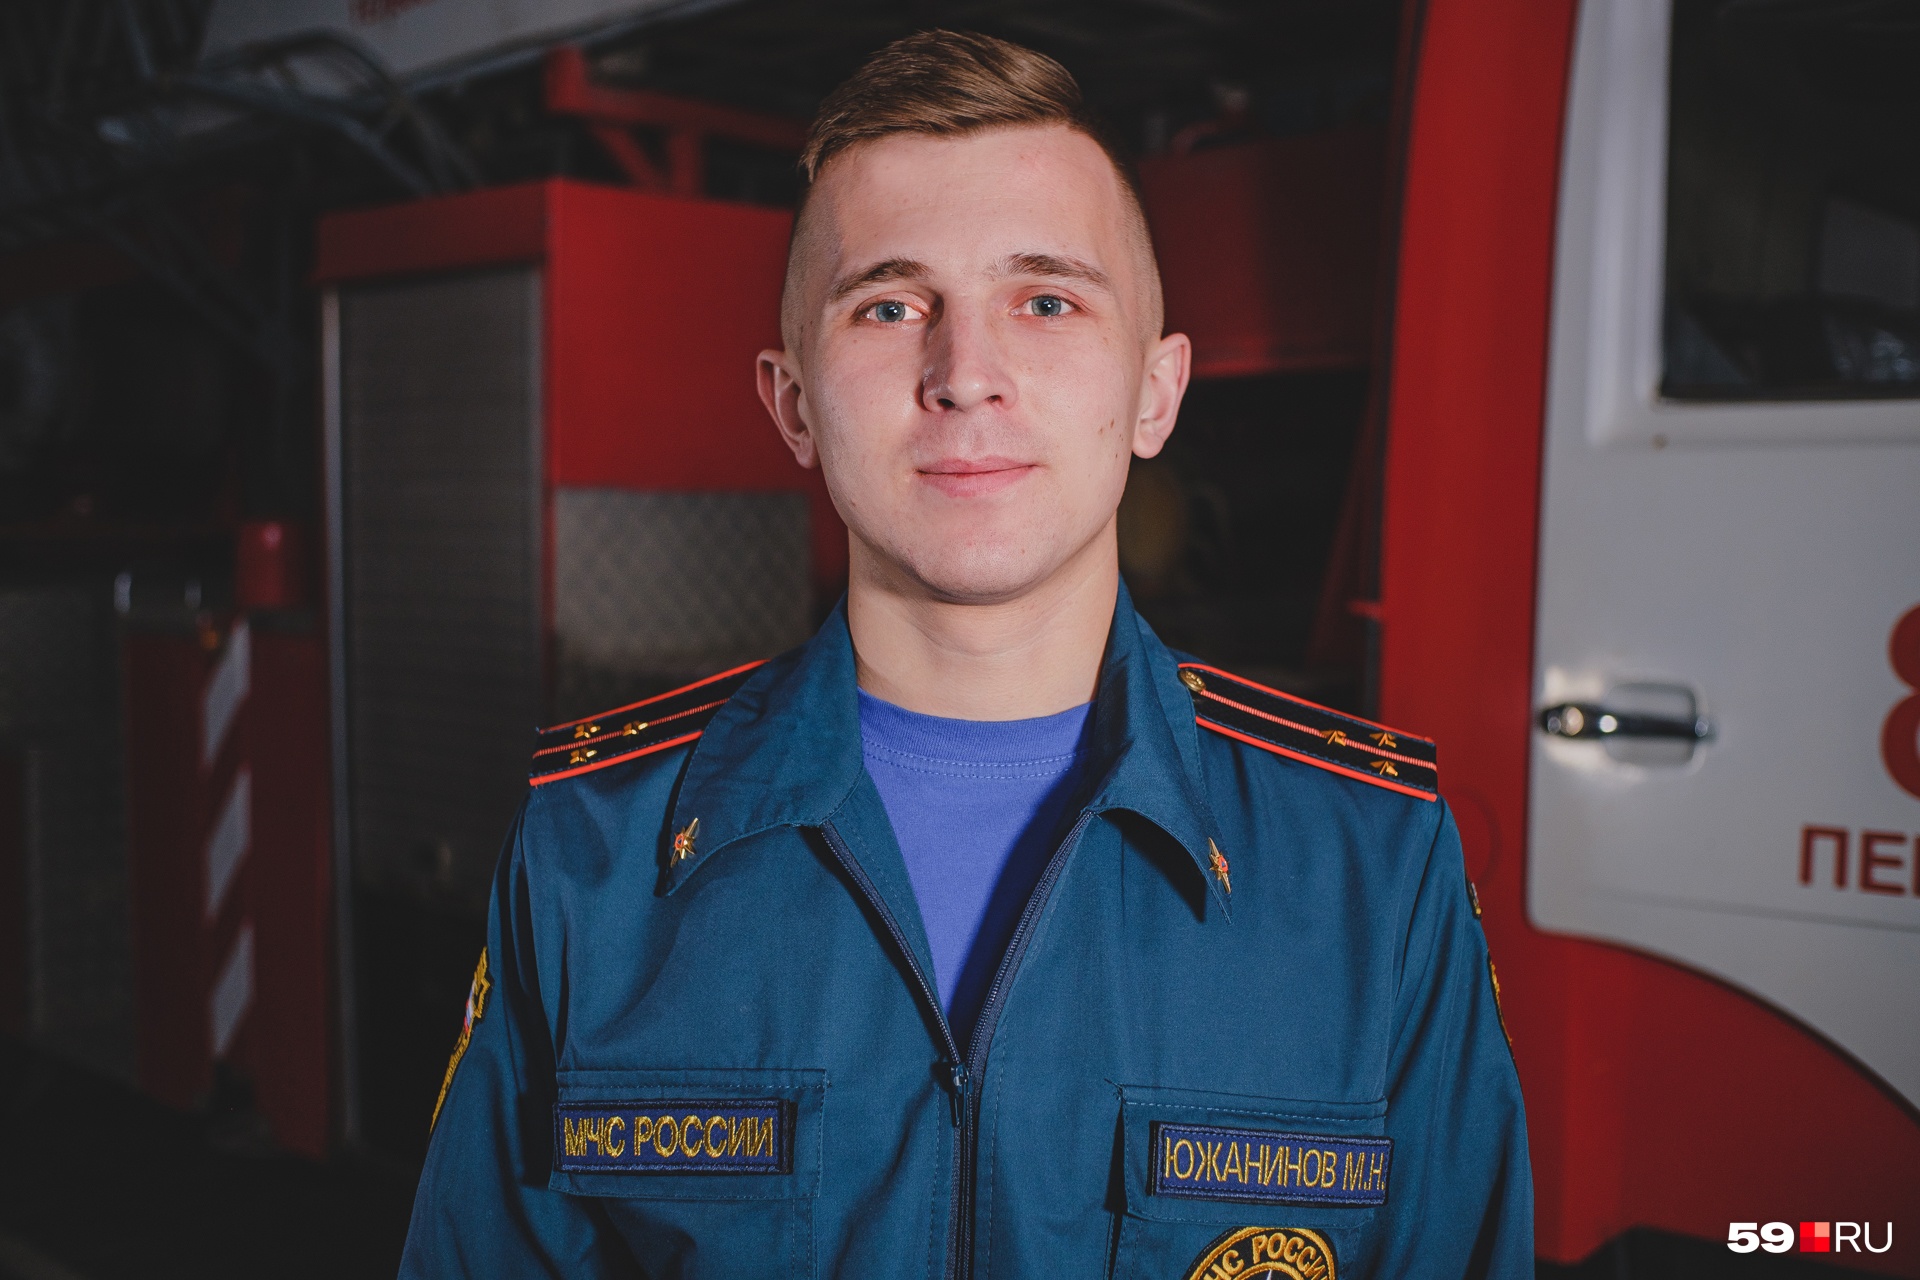 На фото пожарный из Соликамска Максим Южанинов